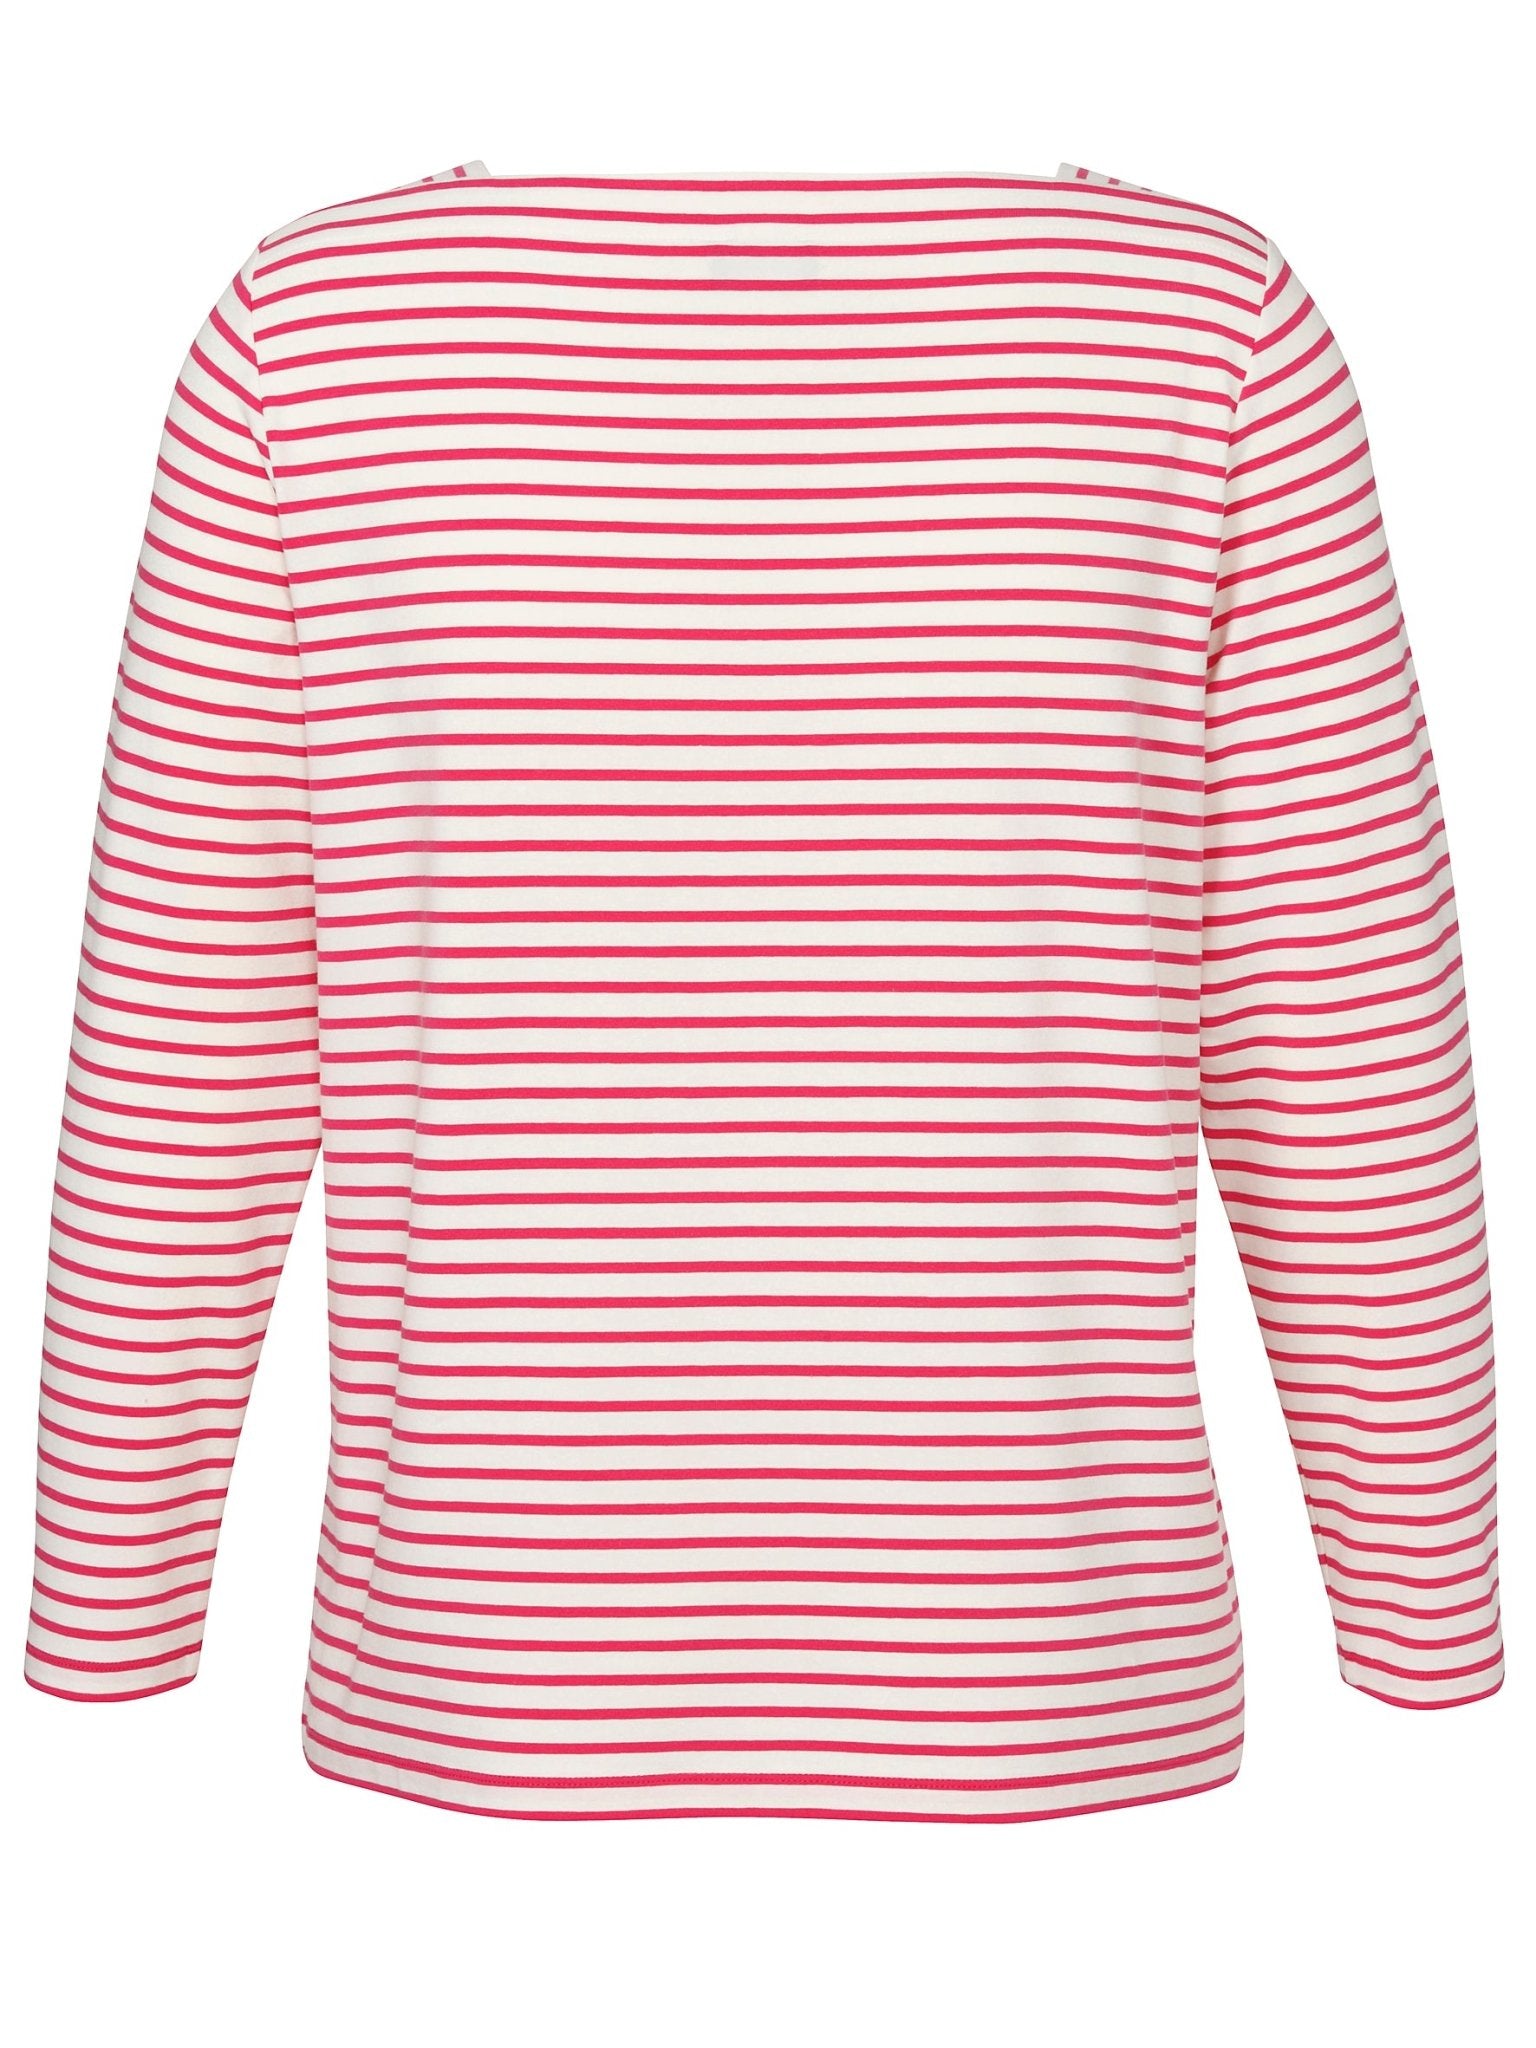 Langärmliges T-Shirt mit pinken Streifen - Wildflowers44